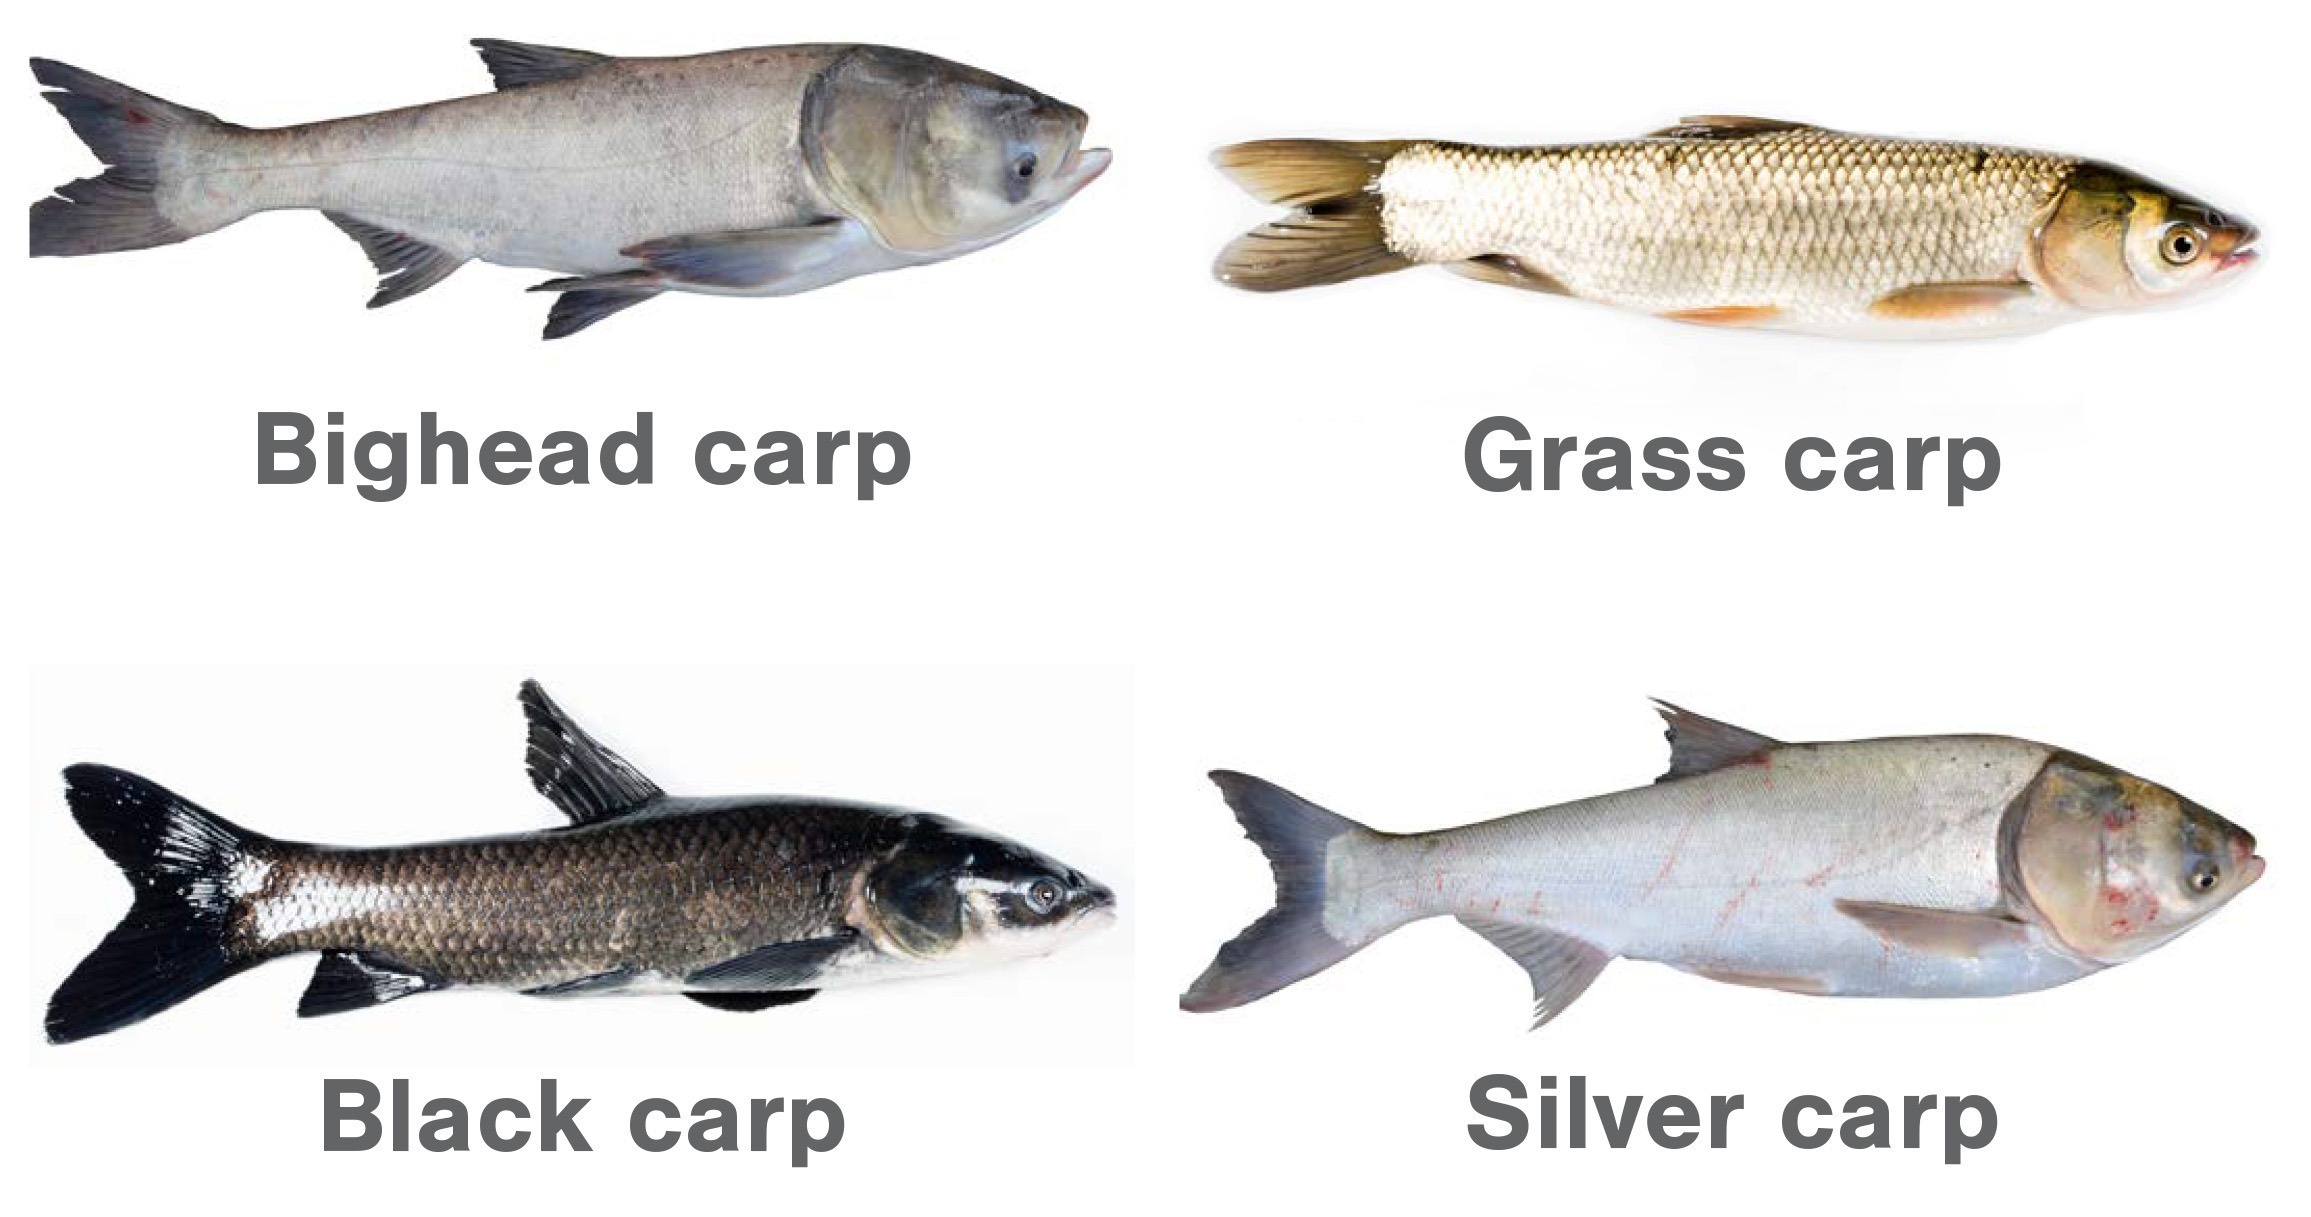 Species of invasive carp